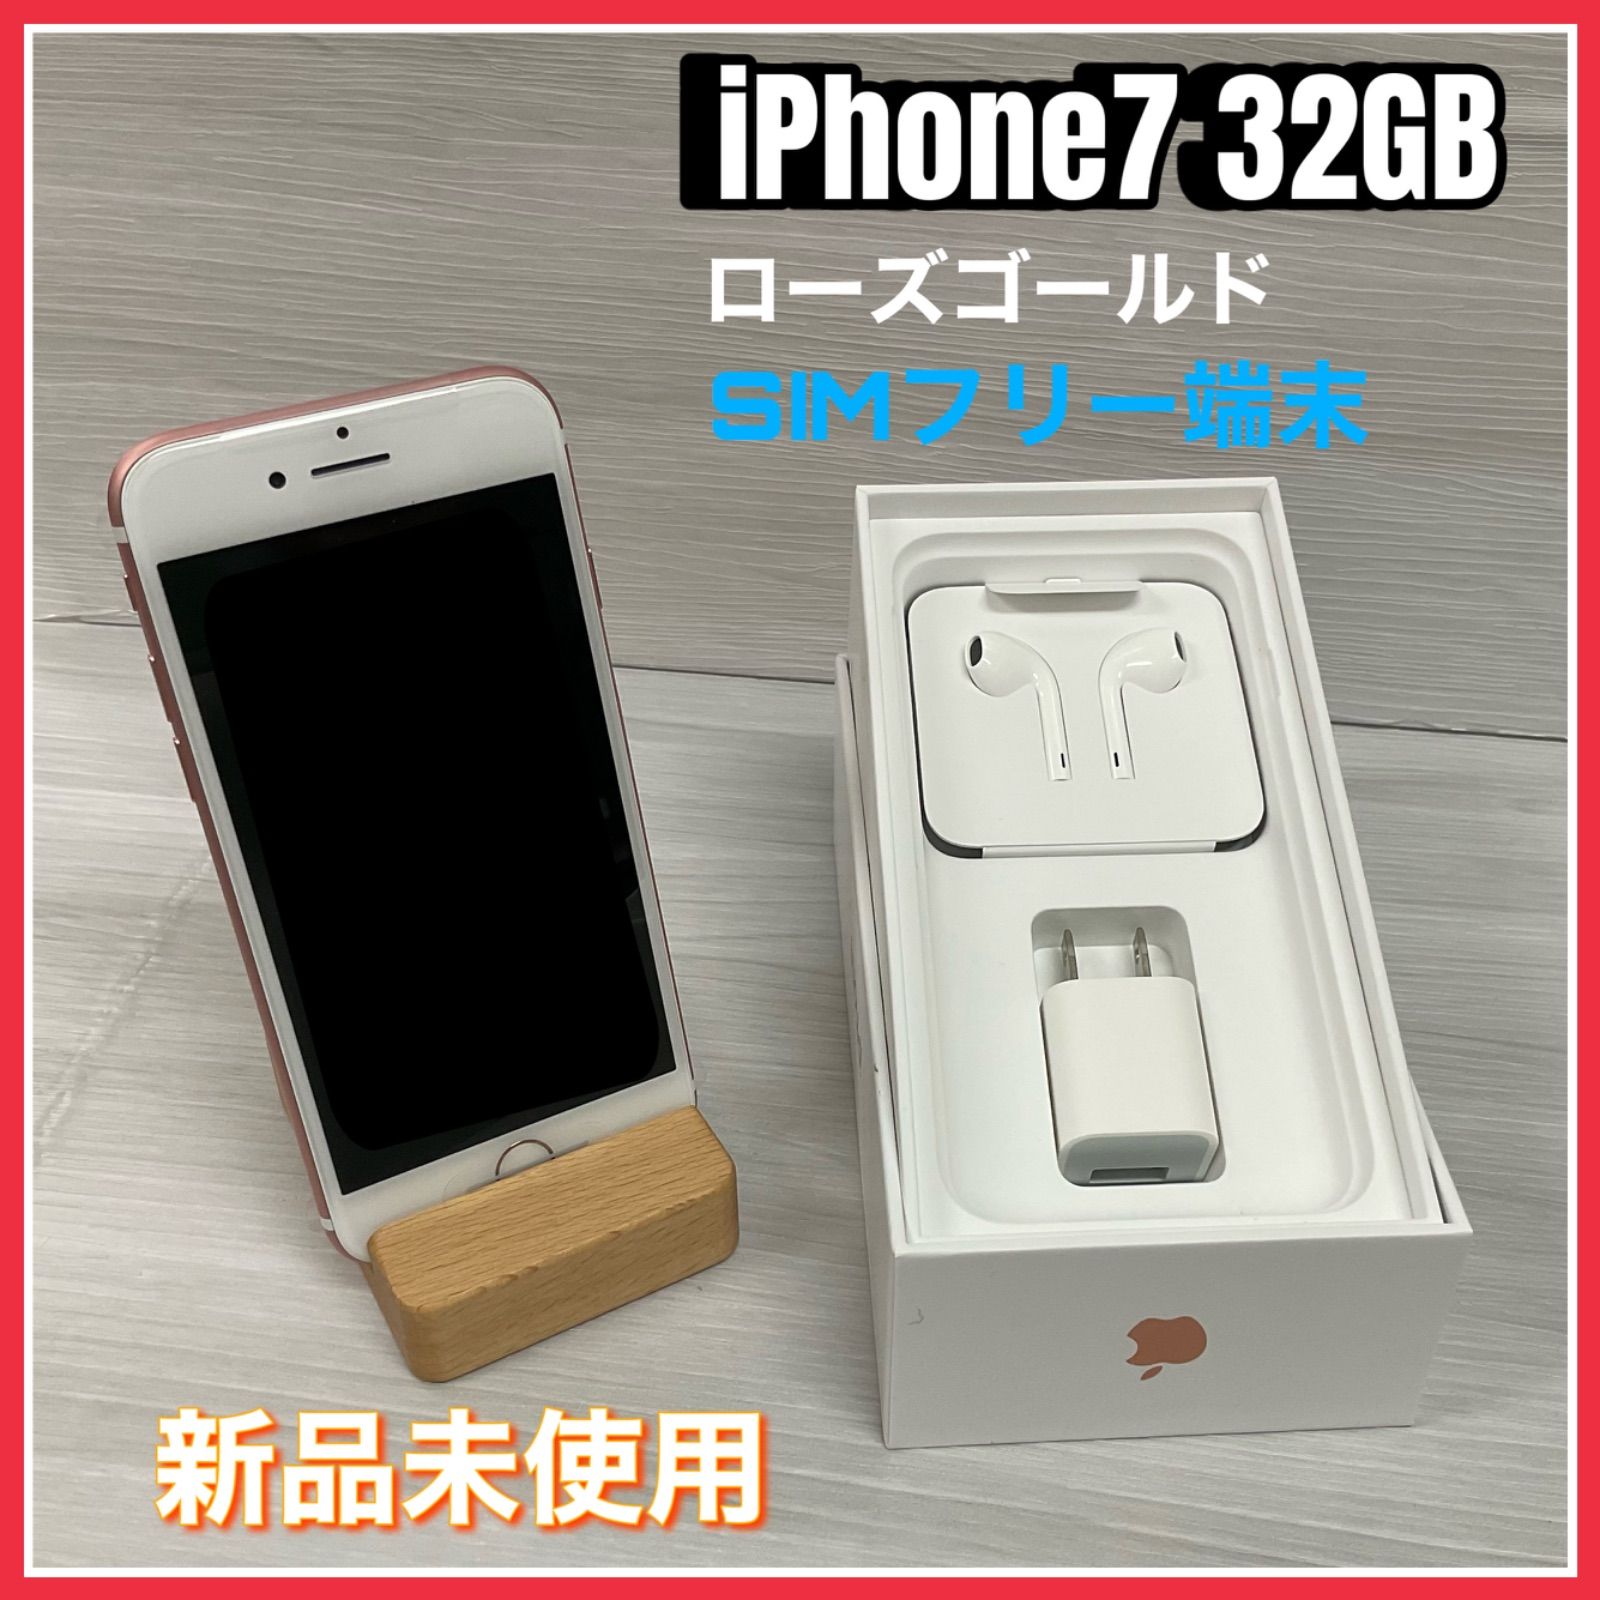 iPhone7 32GB SIMロック(ワイモバイル) - スマートフォン/携帯電話